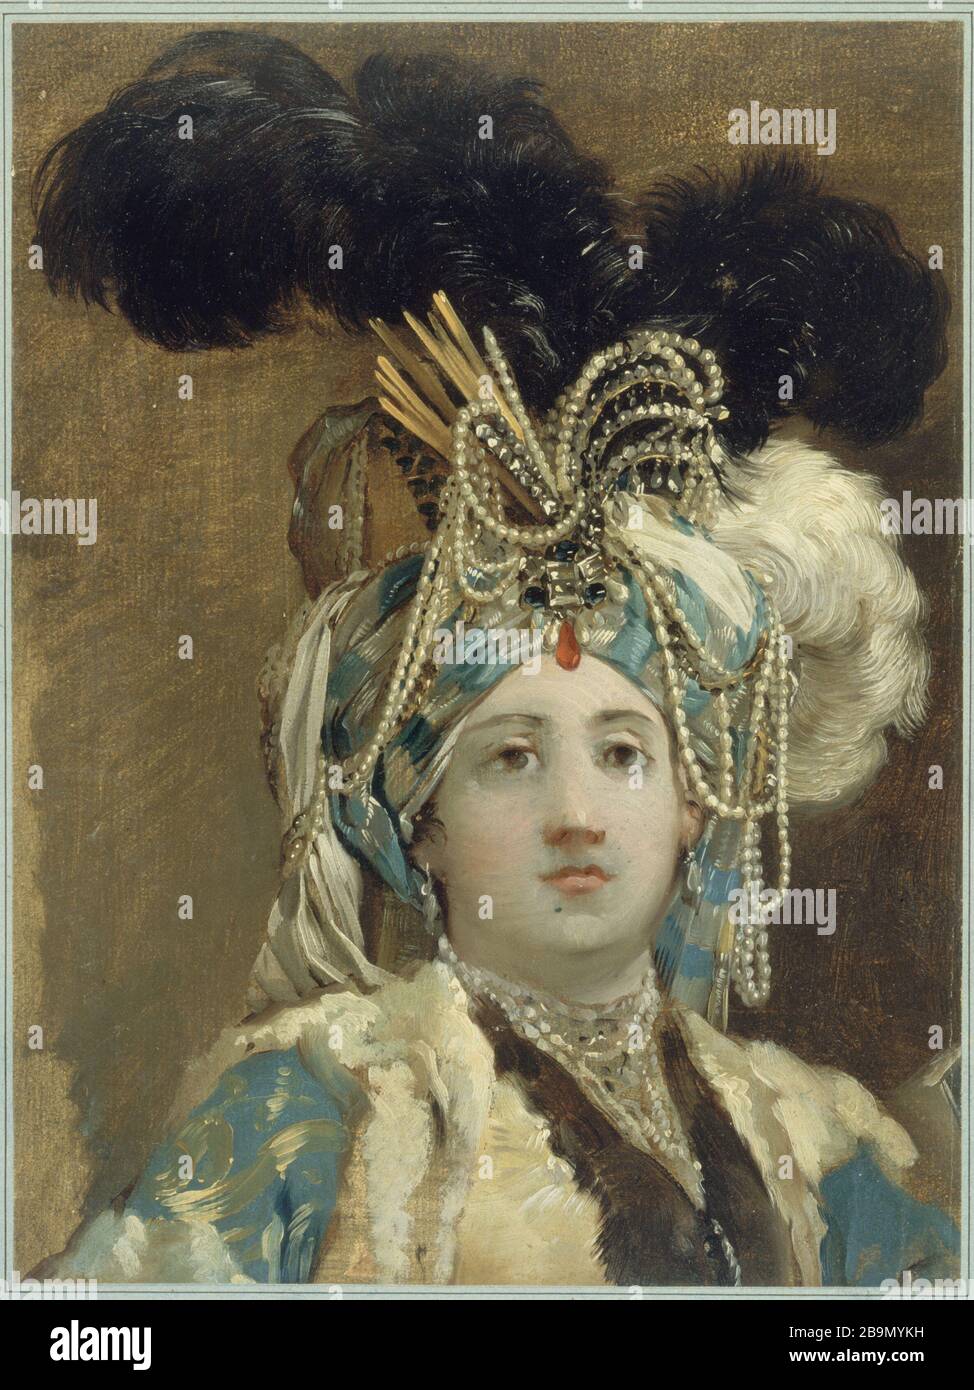 reina sultana Joseph-Marie Vien (1716-1809). 'reine de sultanaje'. Musée des Beaux-Arts de la Ville de París, Petit Palais. Foto de stock